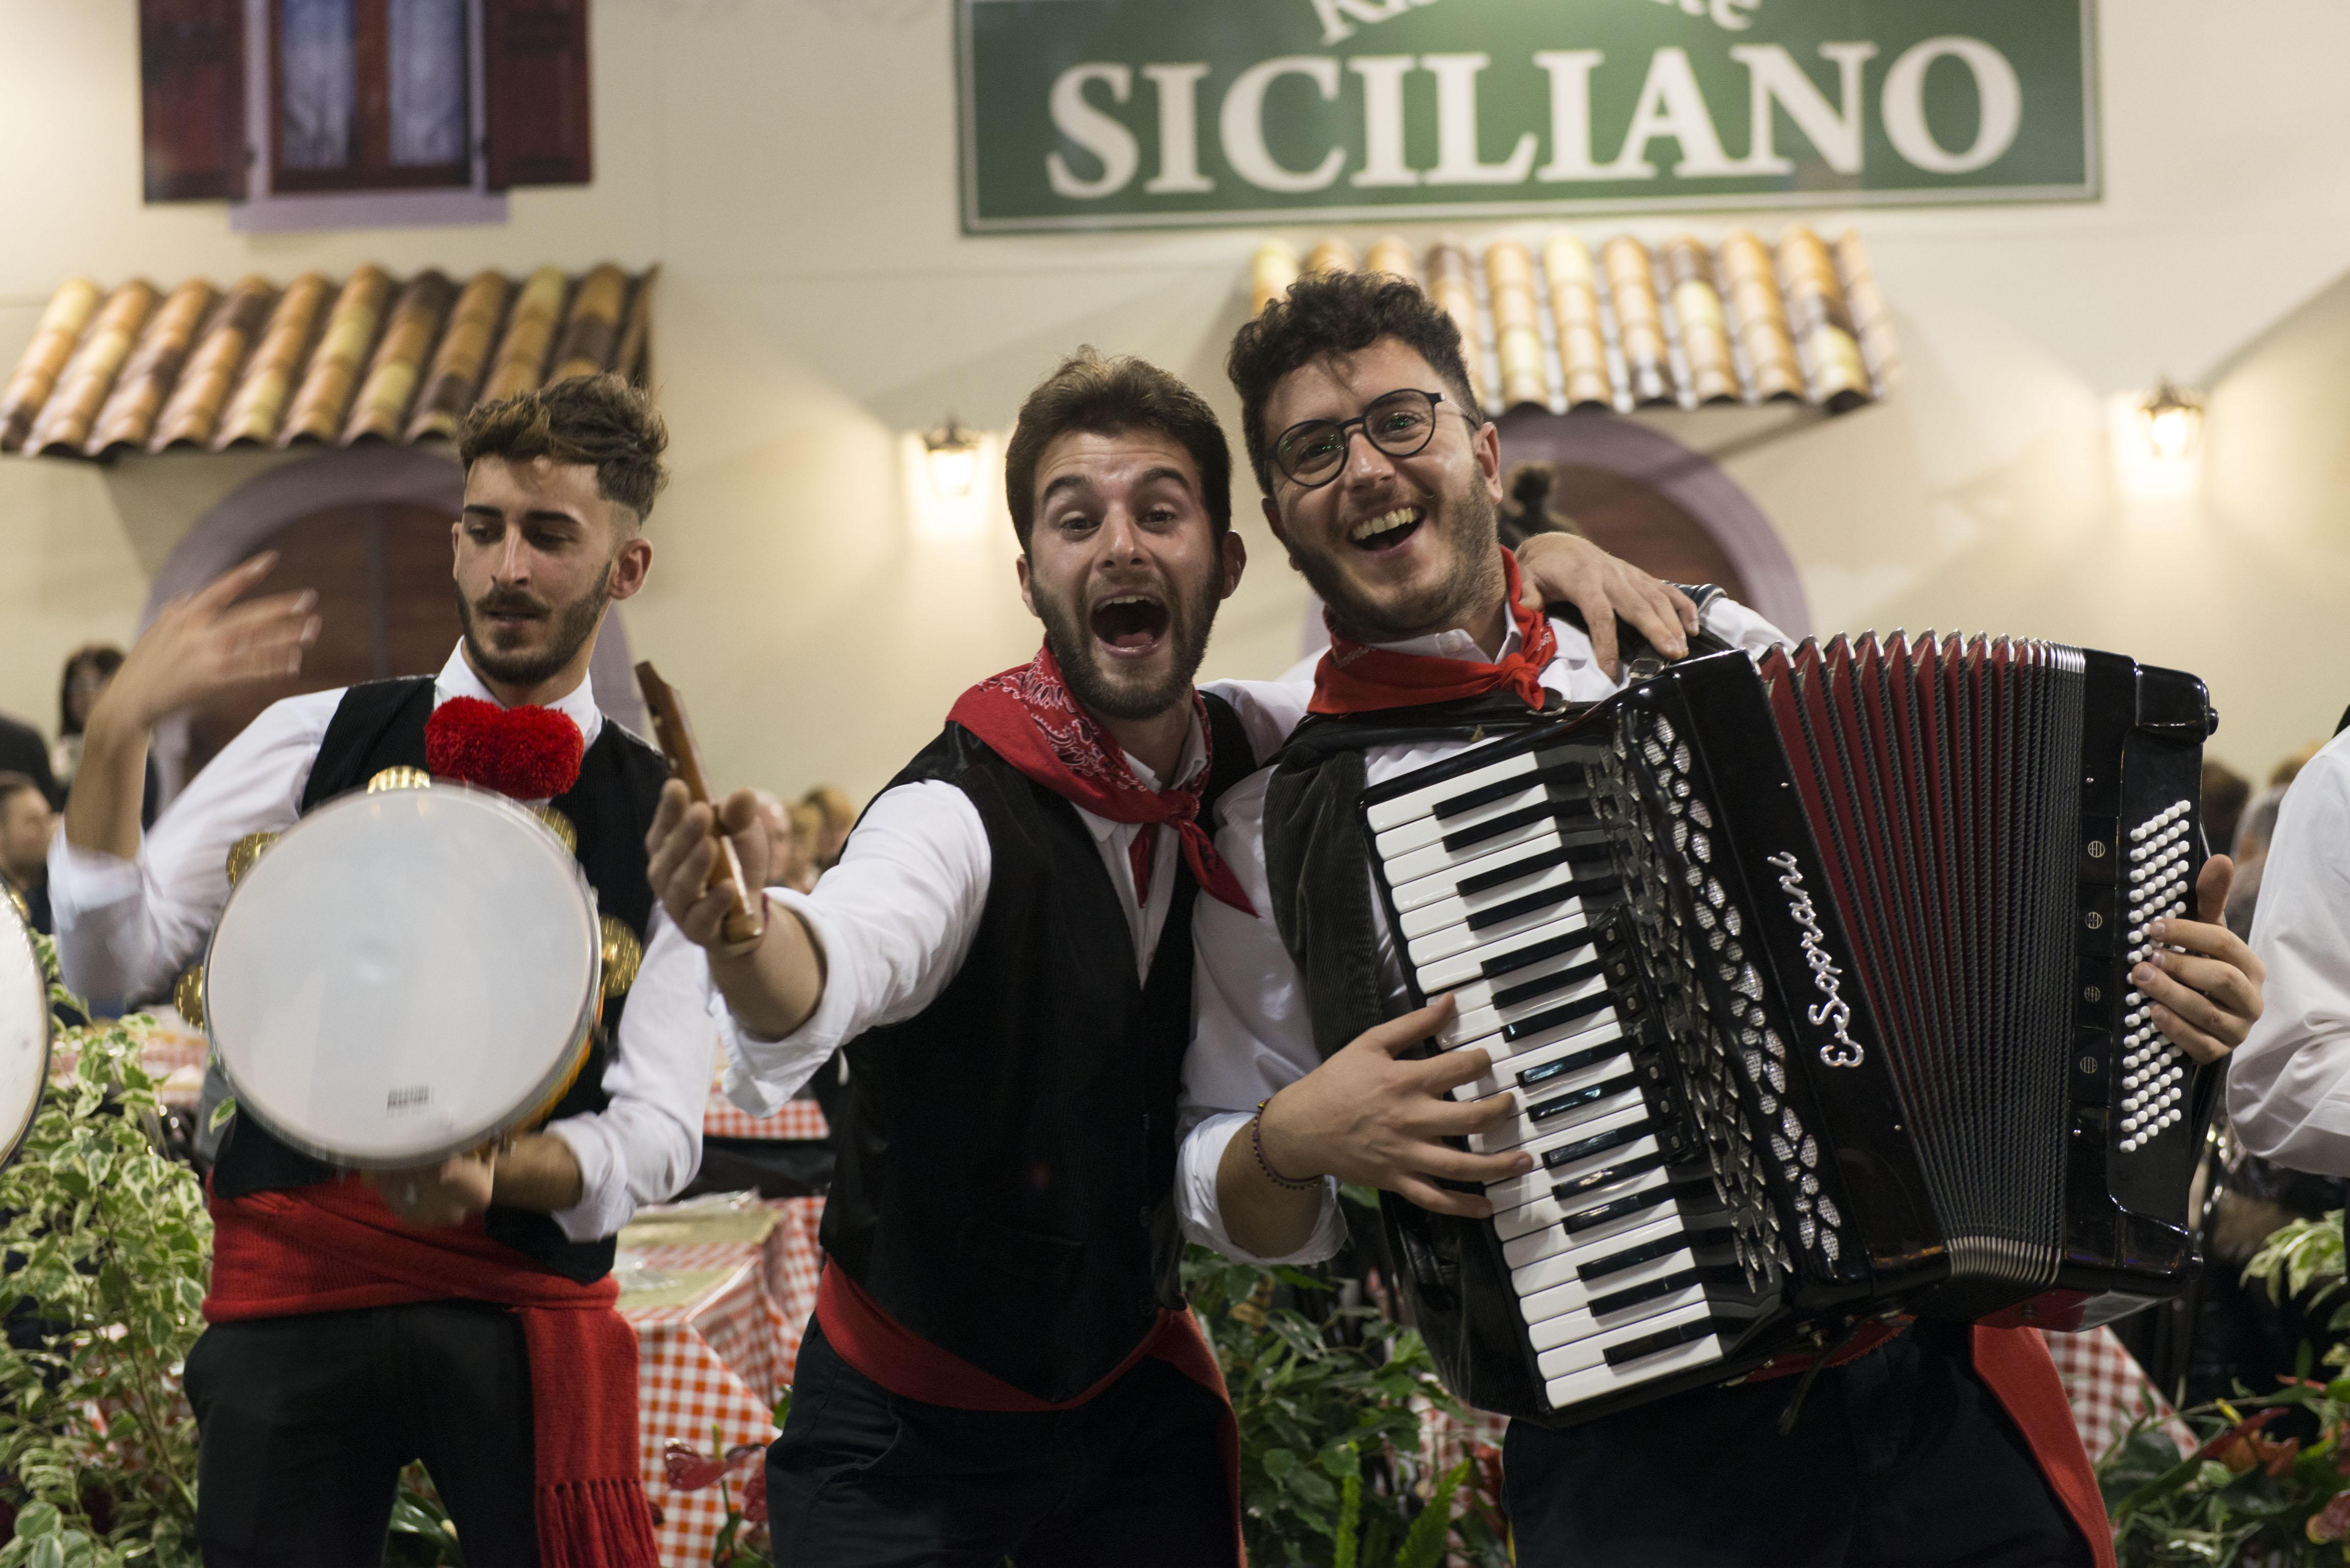 Canti siciliani